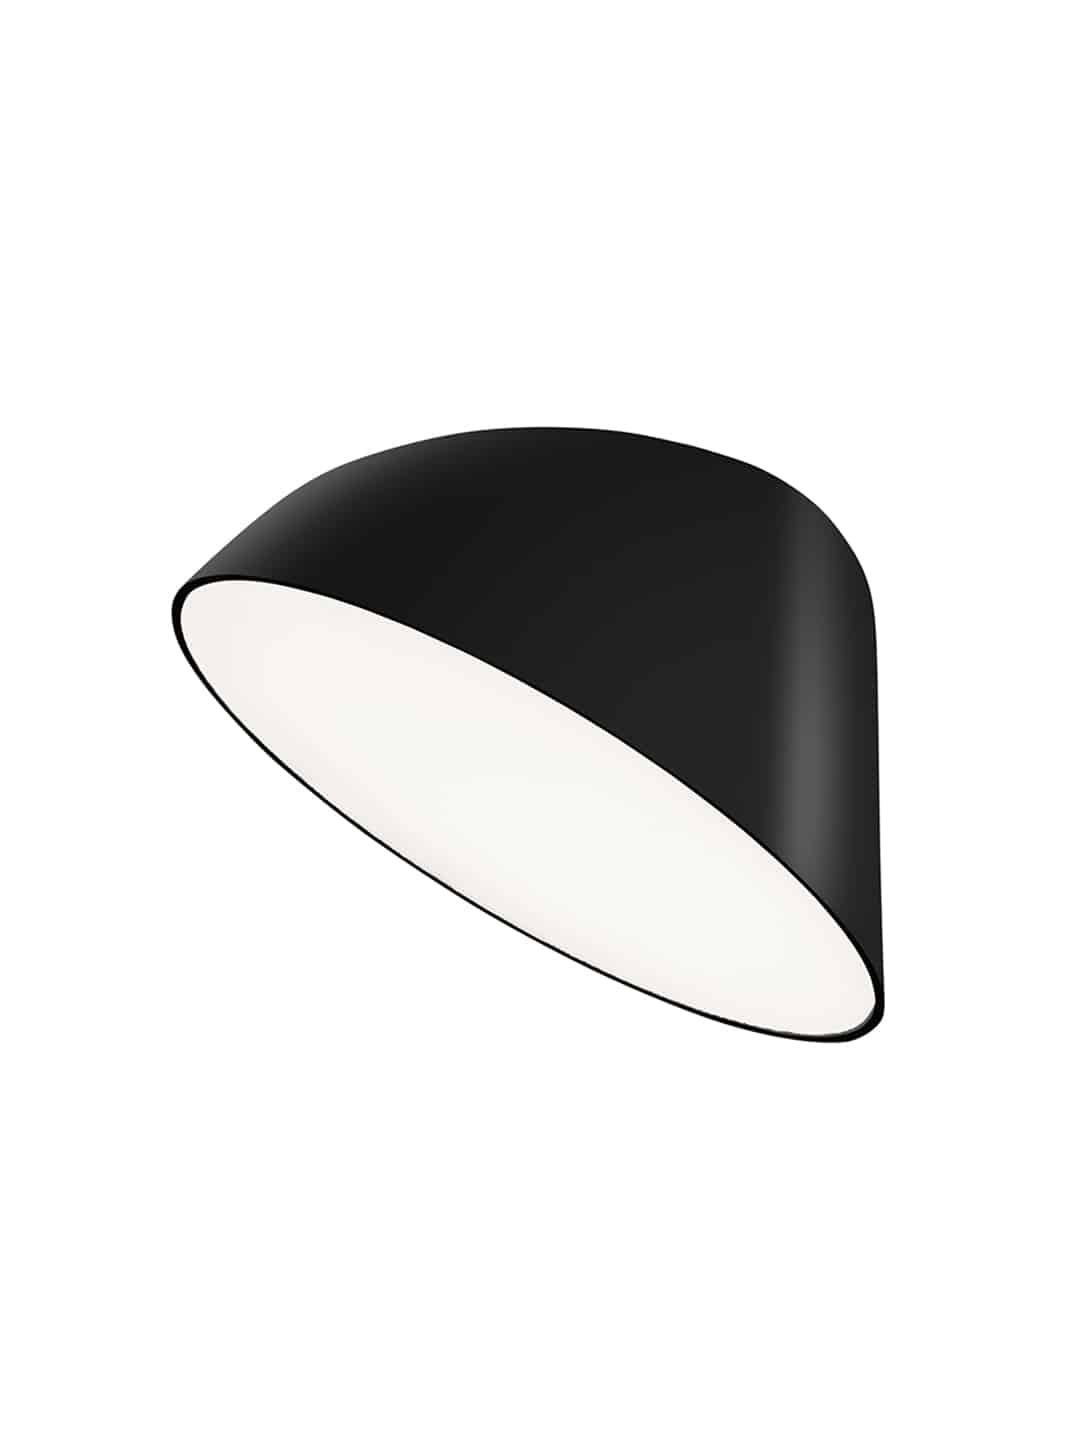 Дизайнерский потолочный светильник Zero Lighting Thirty черного цвета